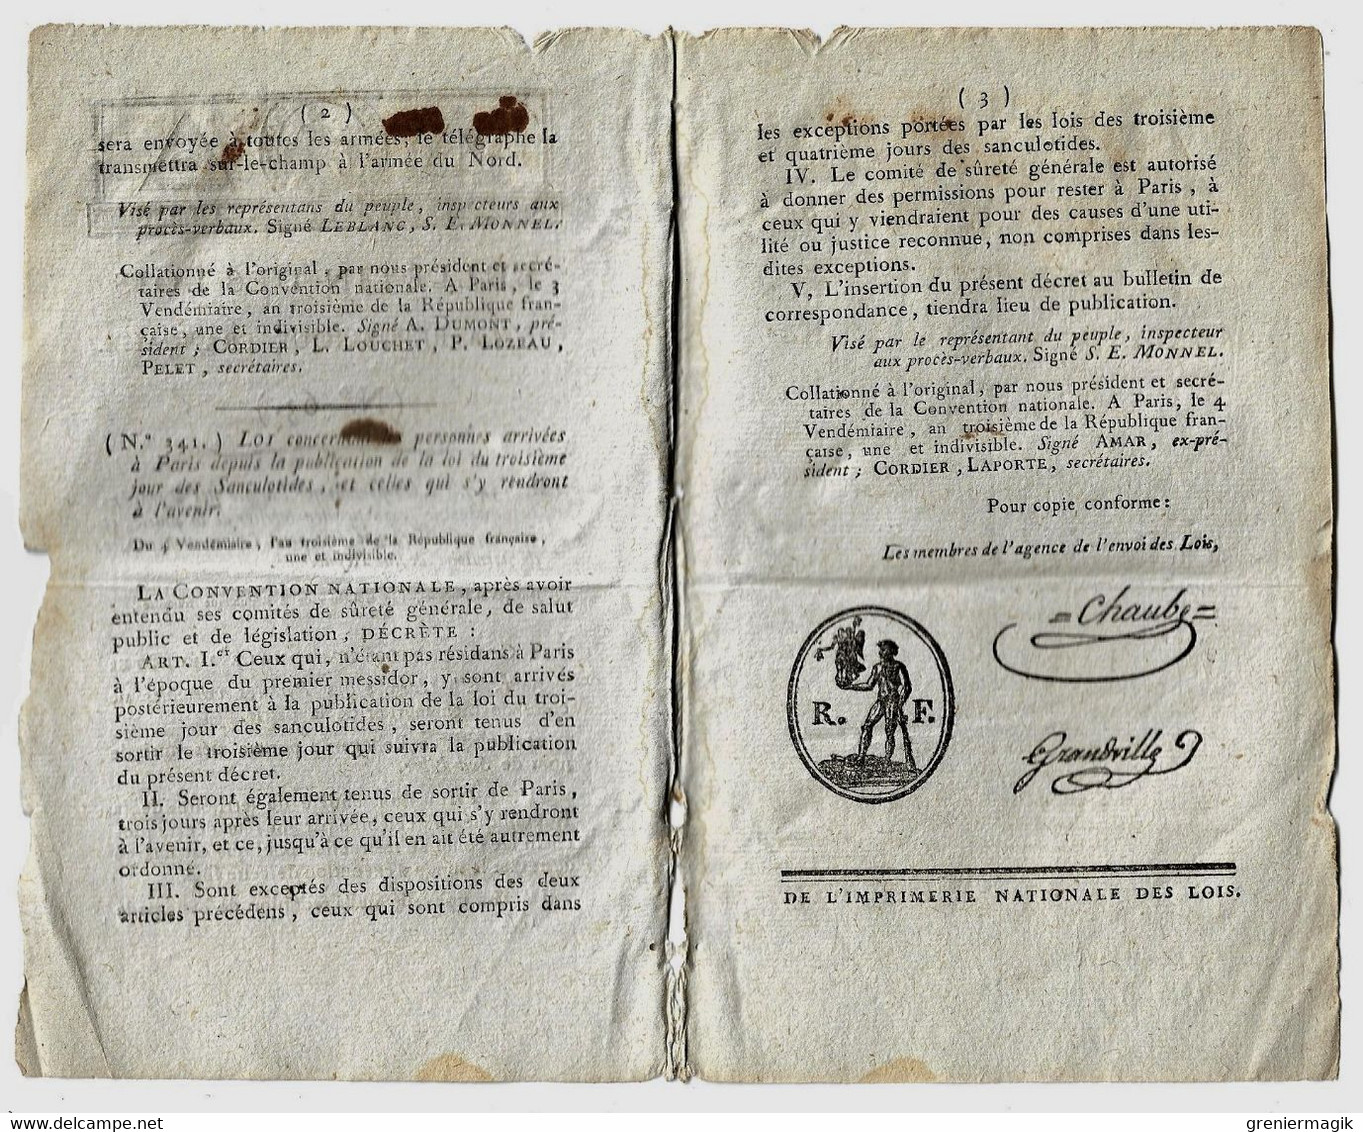 Bulletin Des Lois N°63 Vendémiaire An III 1794 Armée Des Pyrénées Orientales Fort De Bellegarde "Sud Libre"/Paris - Gesetze & Erlasse